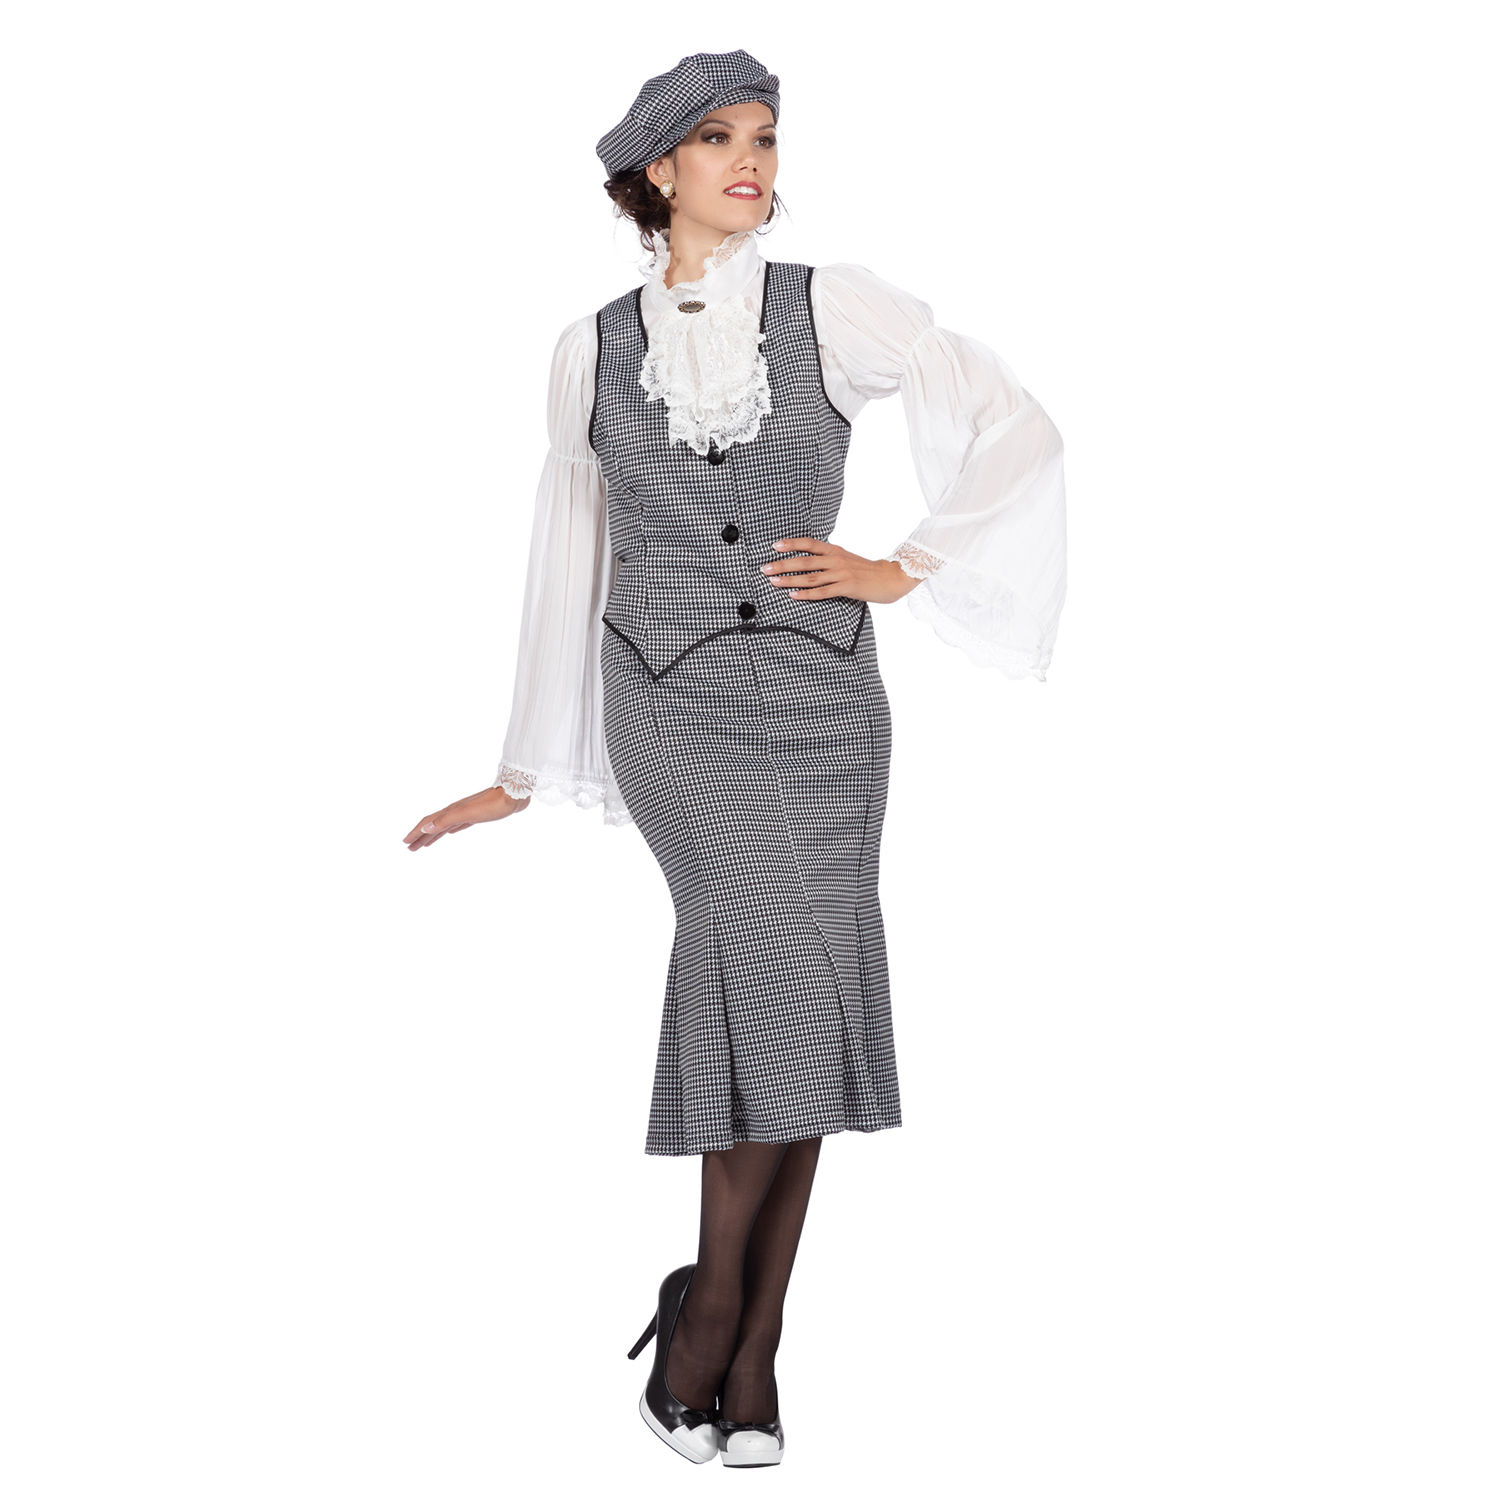 Damen-Kostüm 20er Jahre Polly, 3-teilig mit Mütze, Weste & Rock, Gr. 38